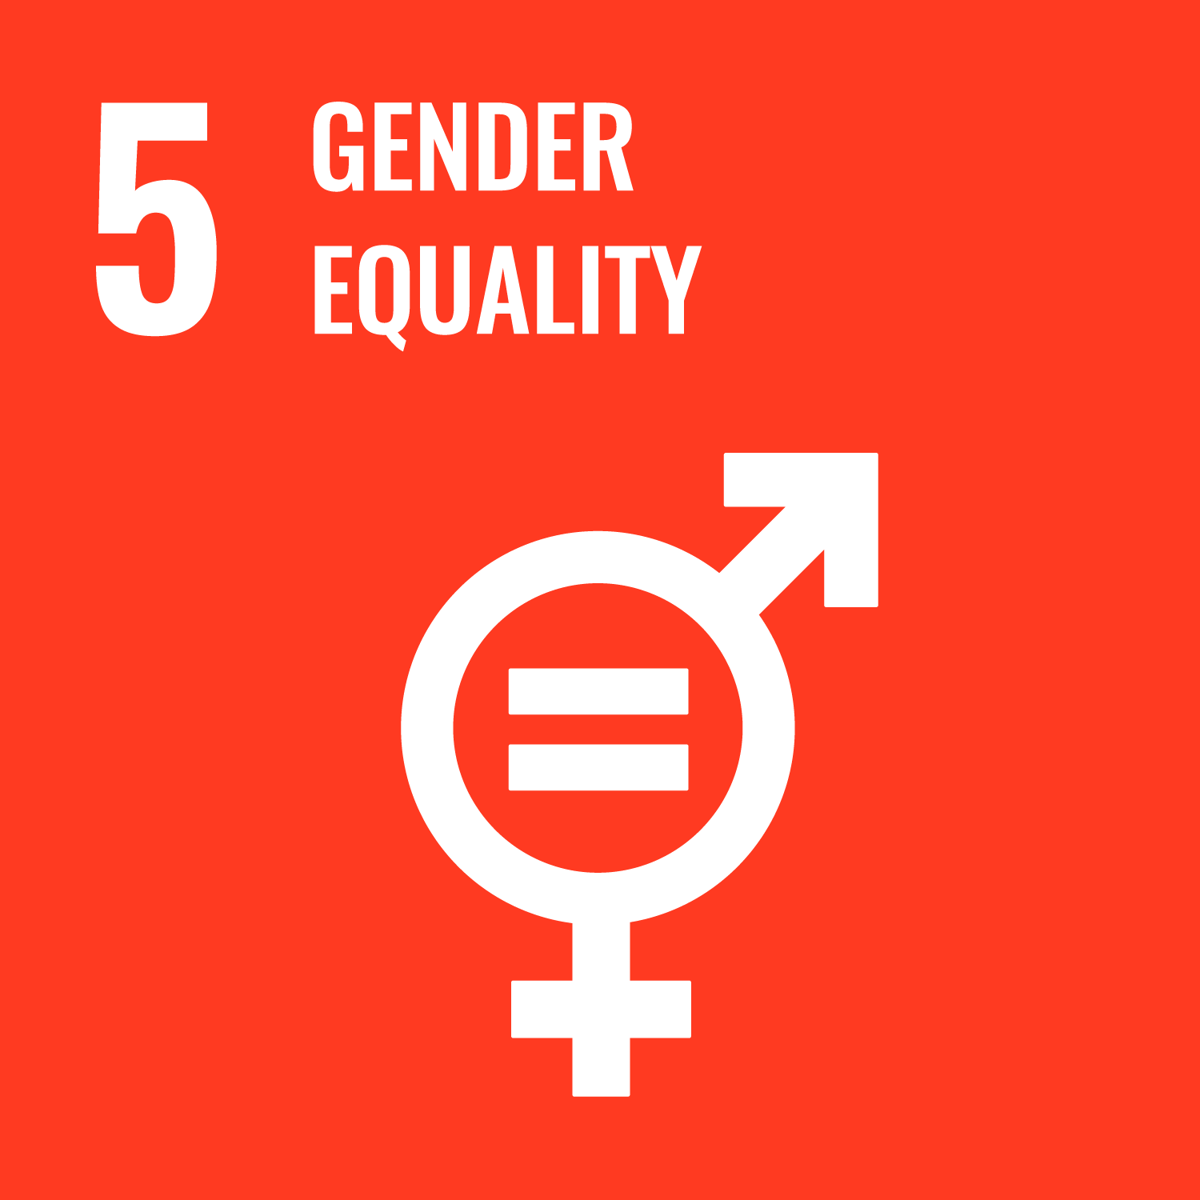 5 Gender equality.png